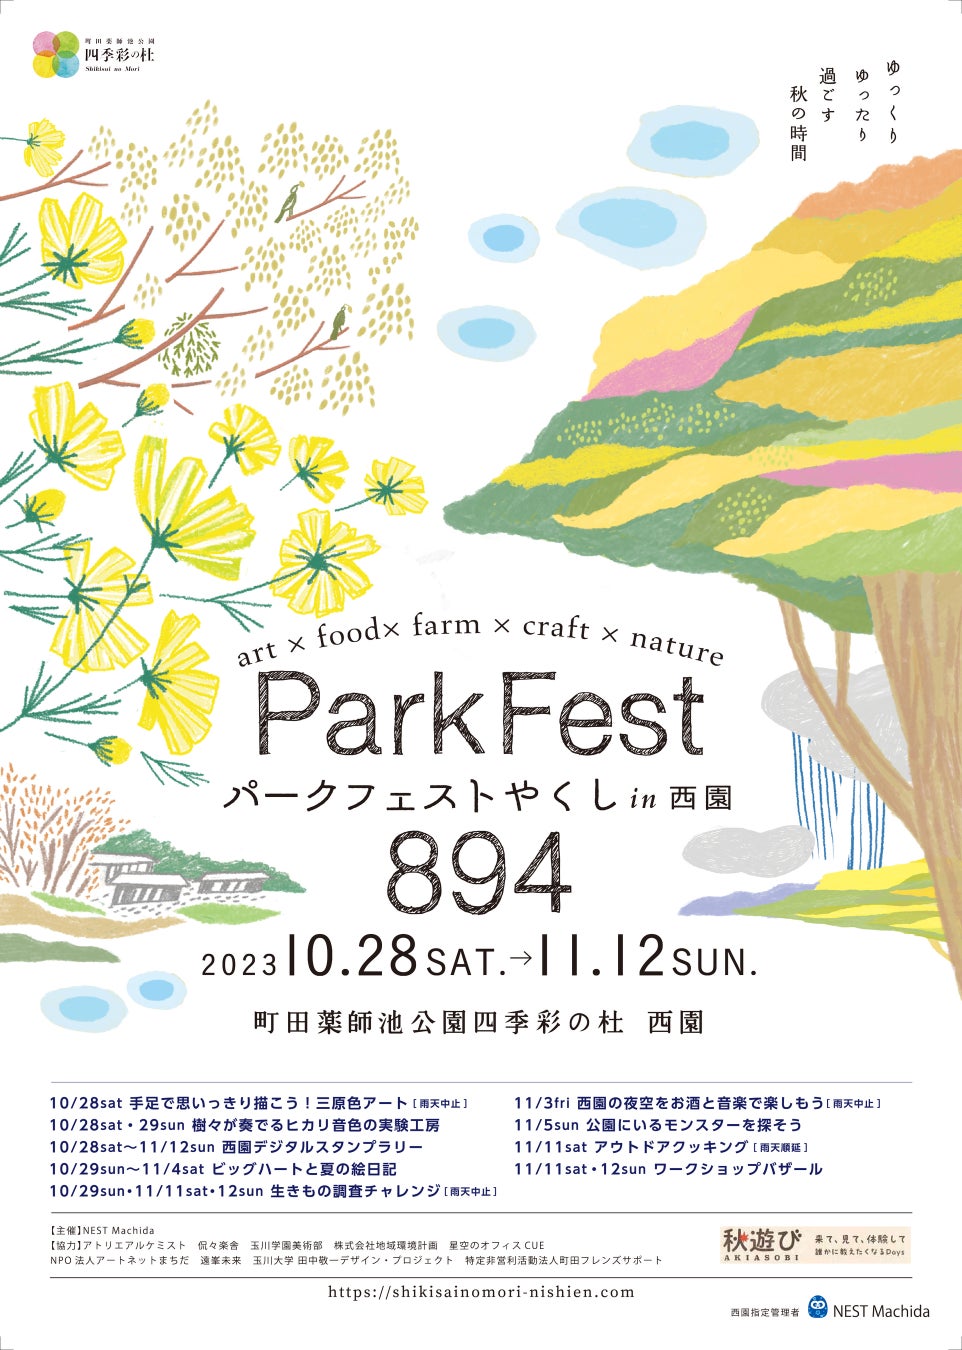 【秋は町田の自然豊かな公園で思いっきり遊ぼう】無料で参加できるイベントが盛りだくさん。「パークフェスト894(やくし) in西園」に参加して、たのしい、おいしい想い出をつくろう。